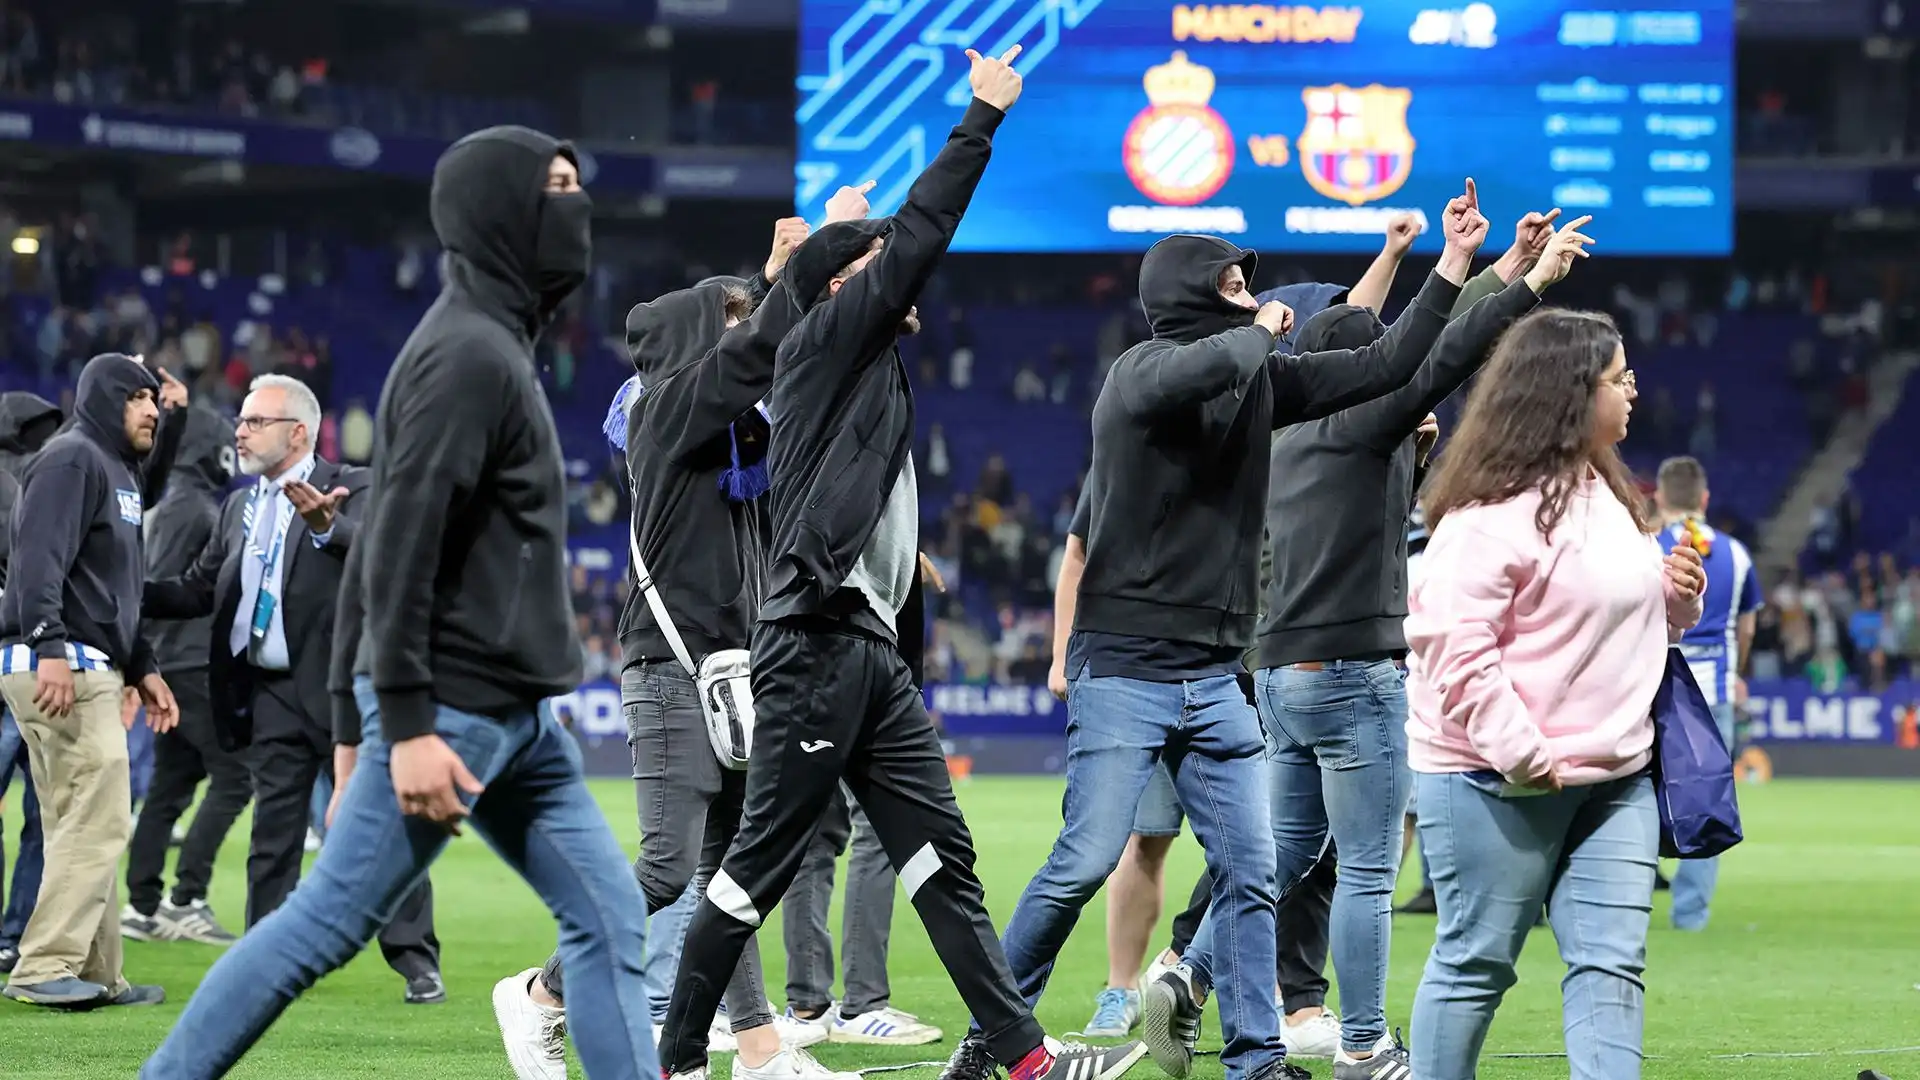 Violenza in campo: calciatori del Barcellona costretti a scappare. Immagini